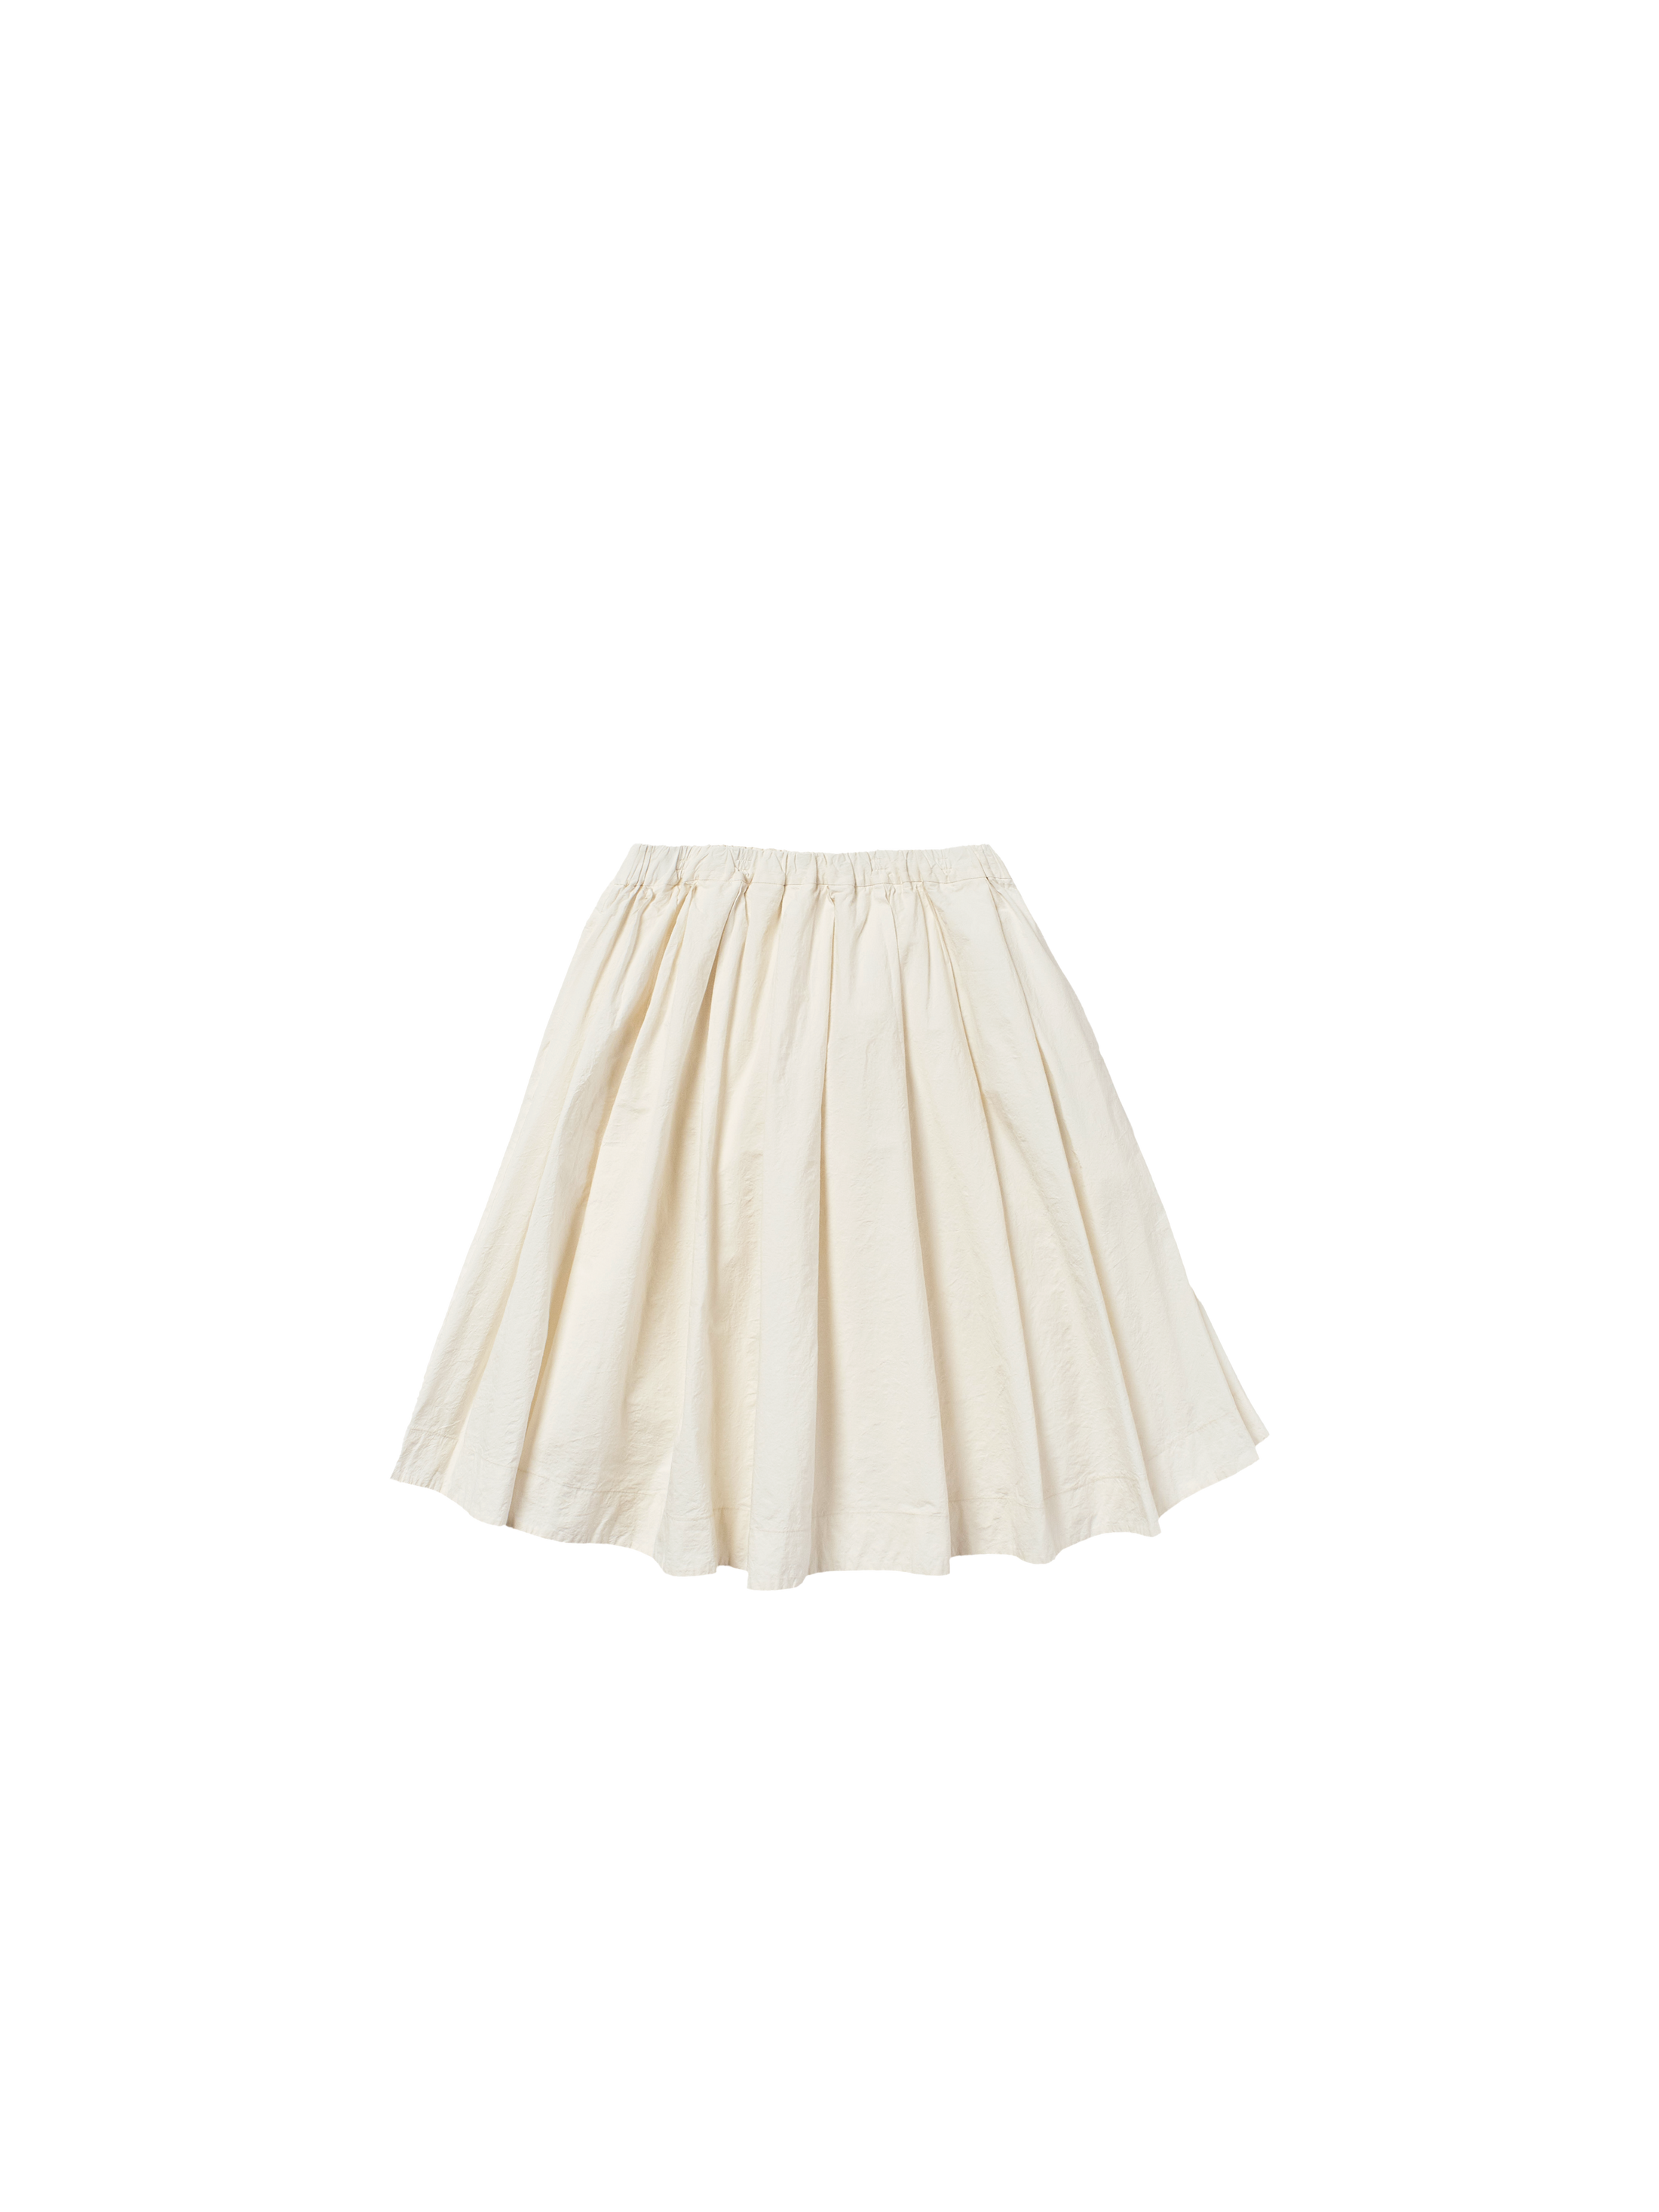 wrinkled skirt